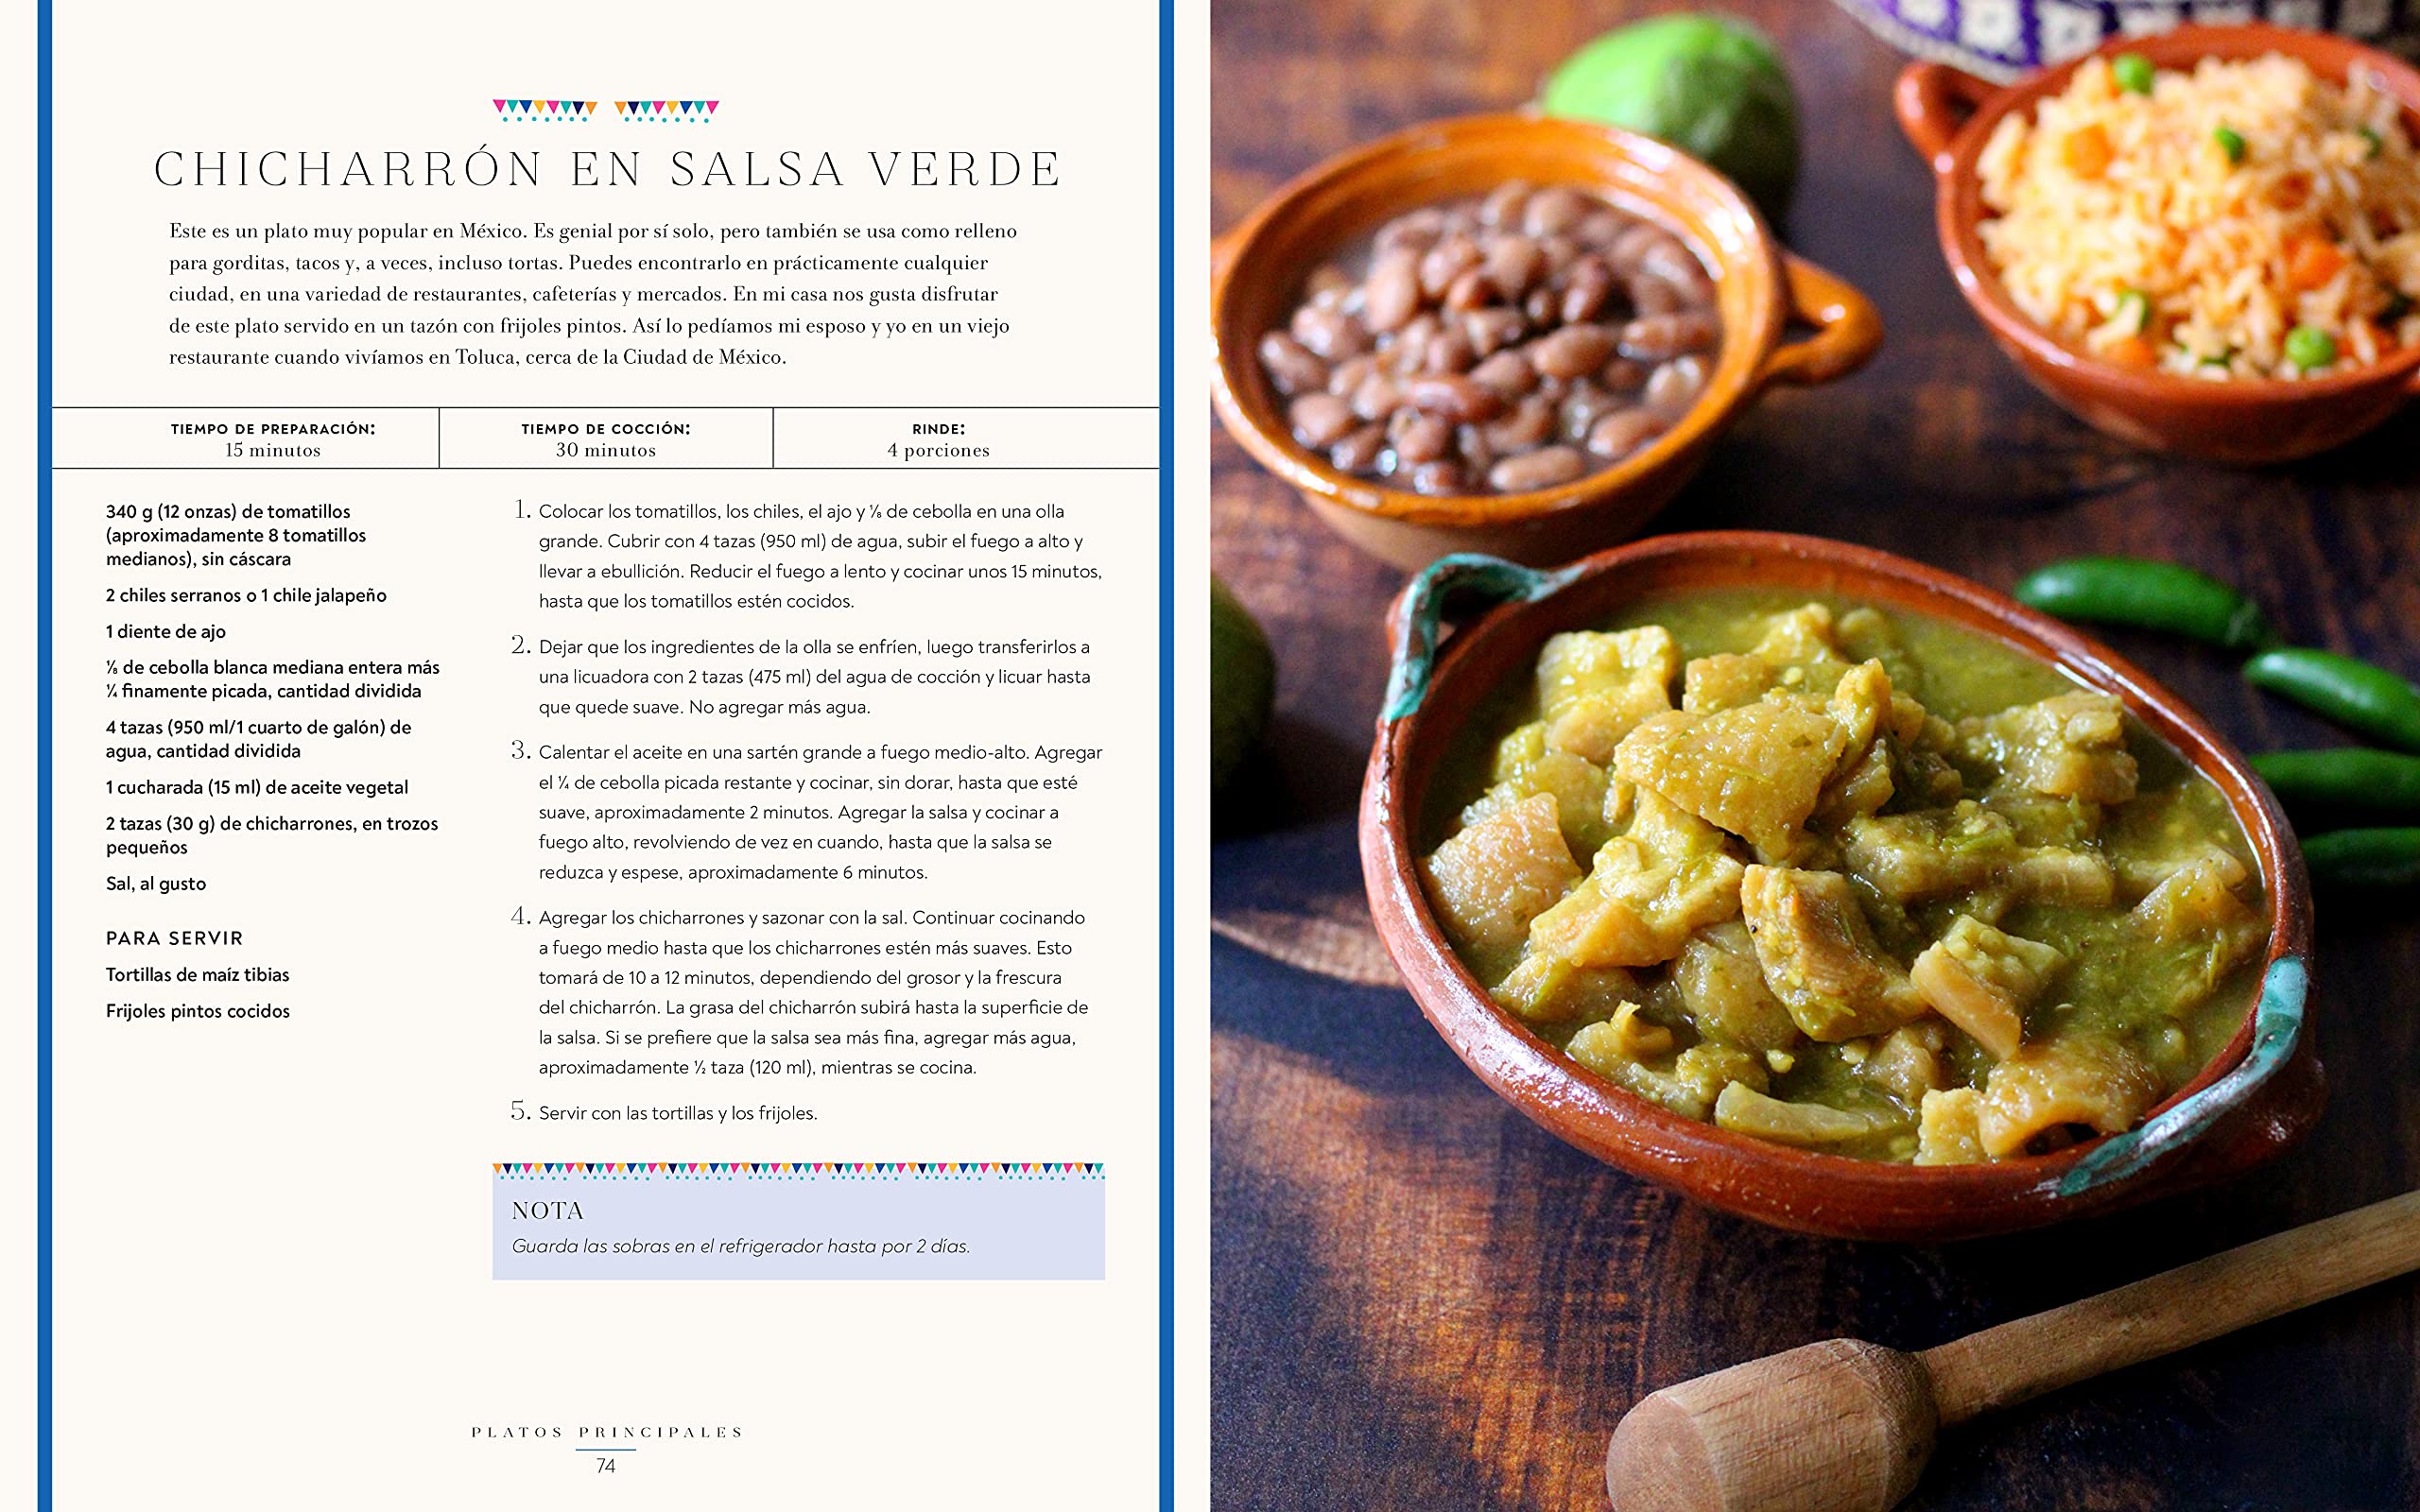 La Cocina Casera Mexicana: Recetas Tradicionales al Estilo Casero que Capturan los Sabores y Recuerdos de Mexico (Mely Martinez)